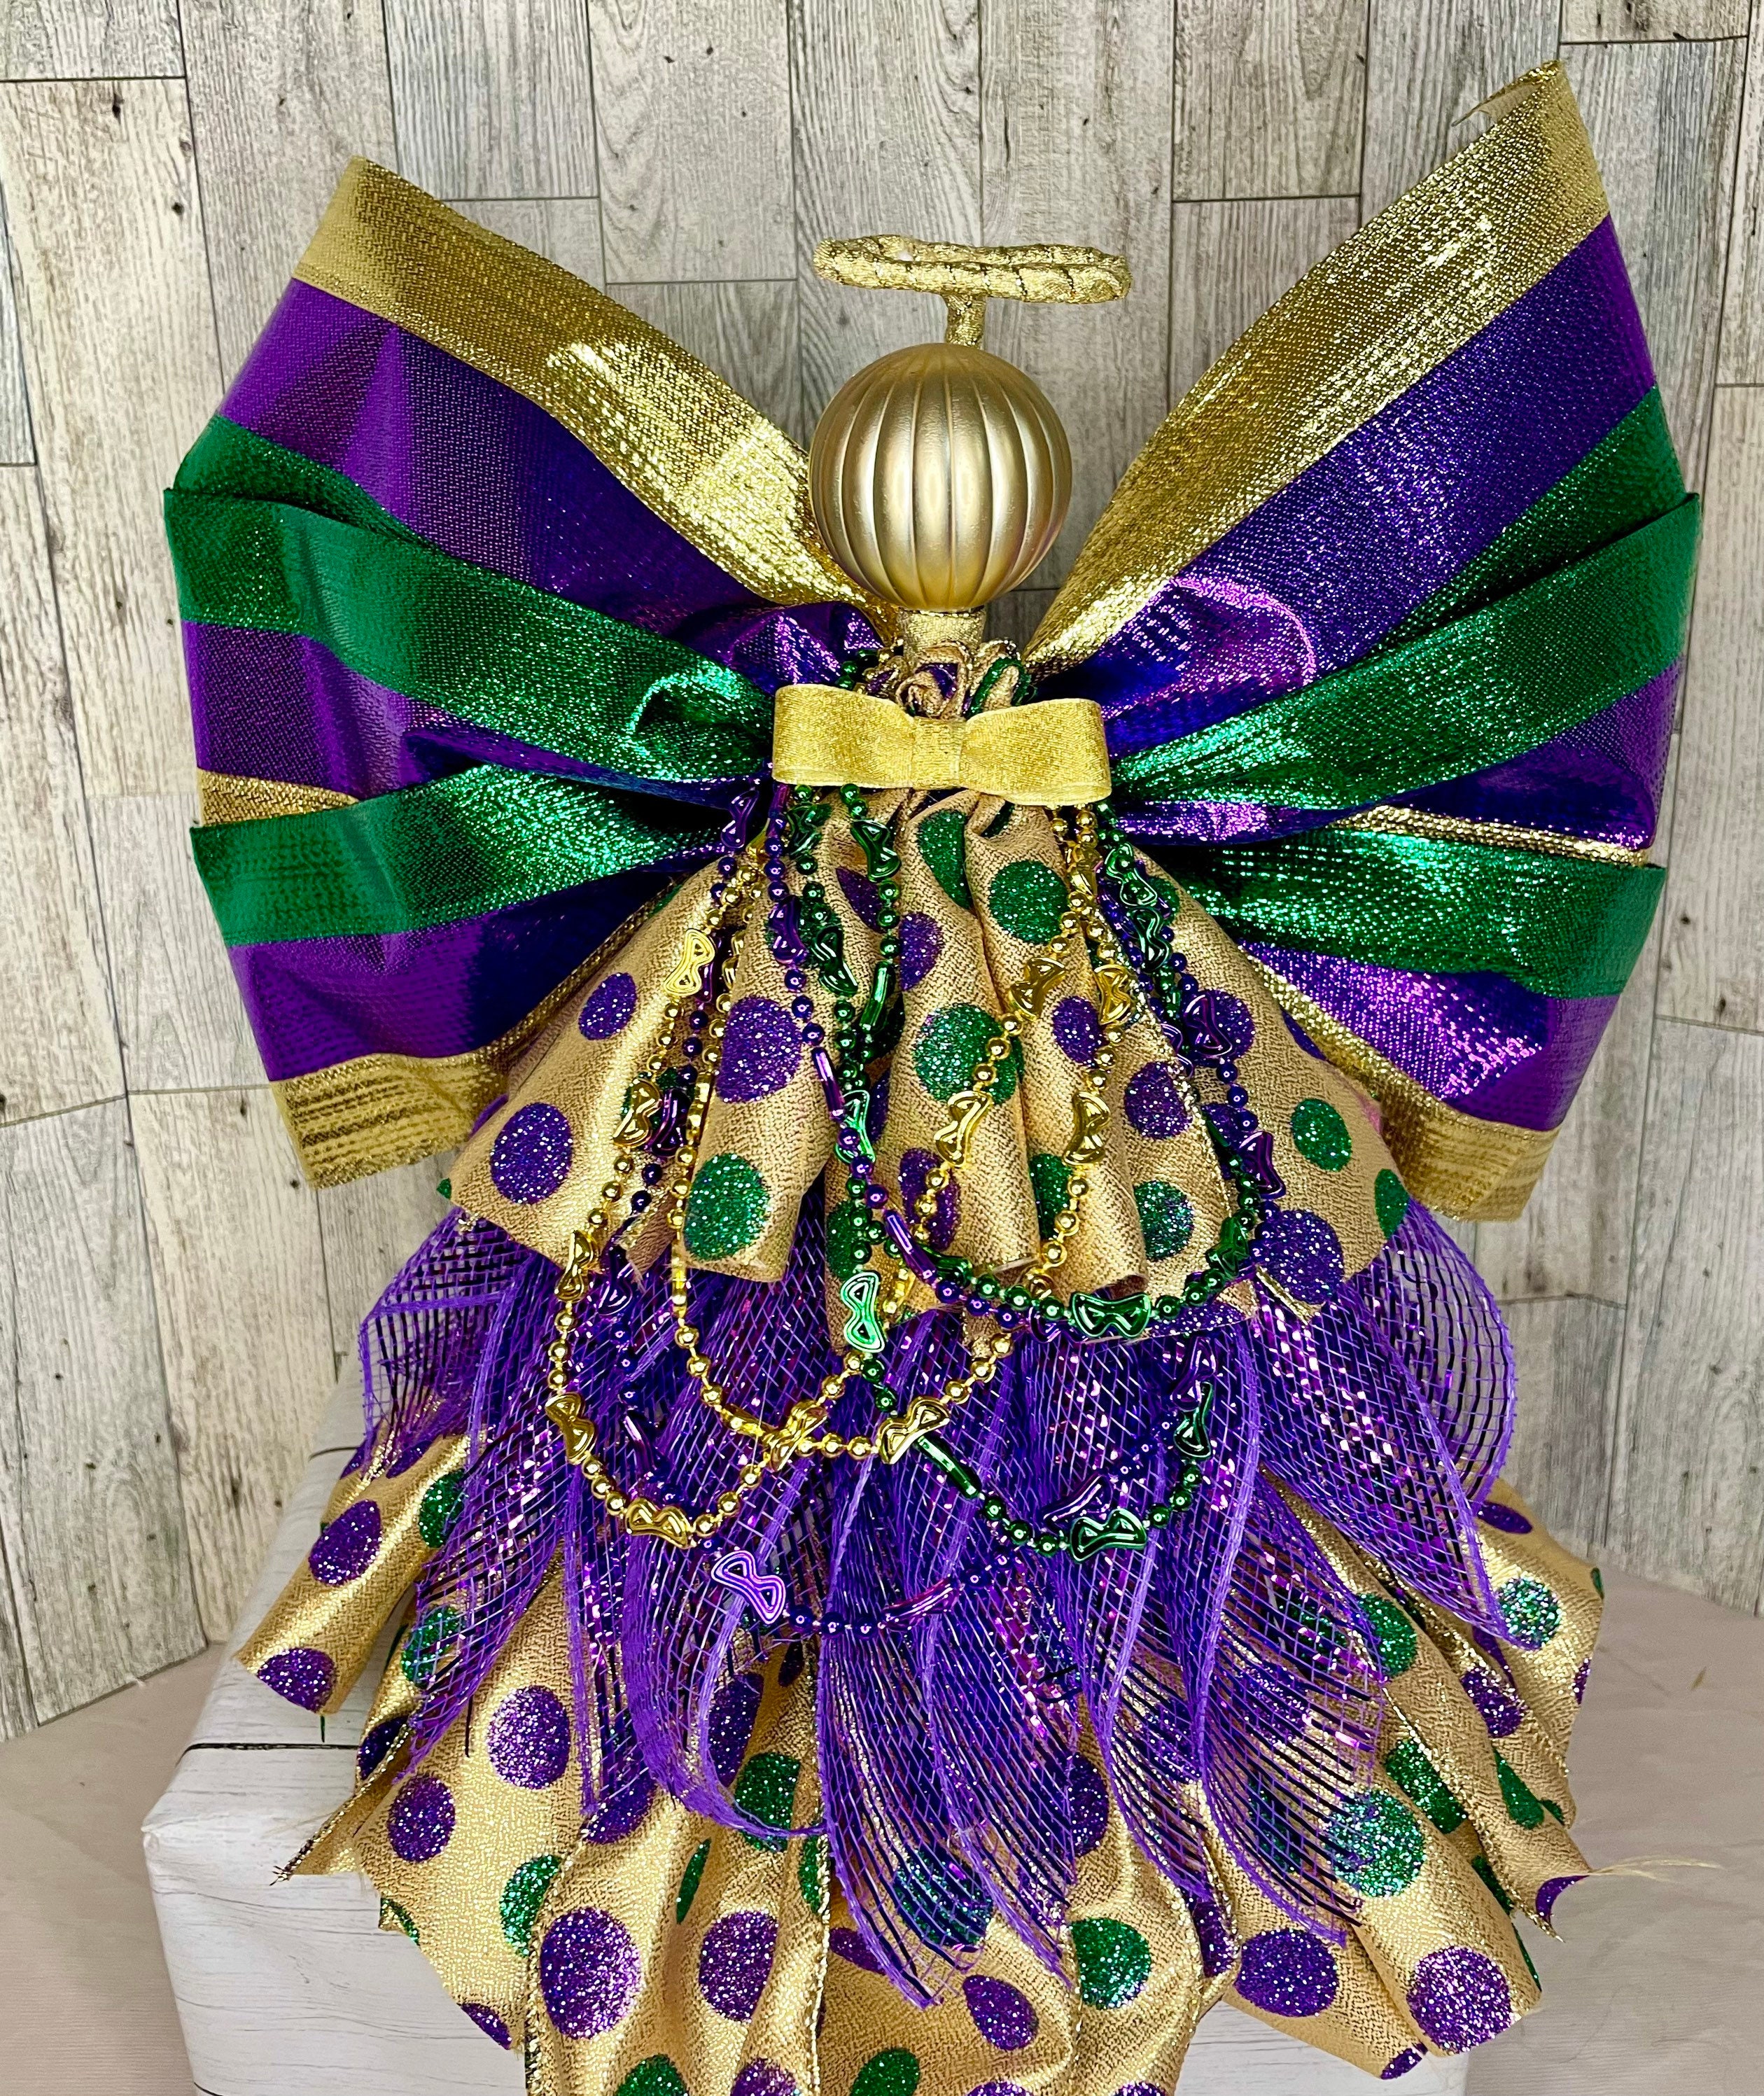  Retisee 11.8 Mardi Gras Tree Topper Mardi Gras Fleur-de-lis  Ornaments Purple Green Gold Glitter Decoration Mardi Gras Bows for Mardi  Gras Carnival Party Decor : Home & Kitchen